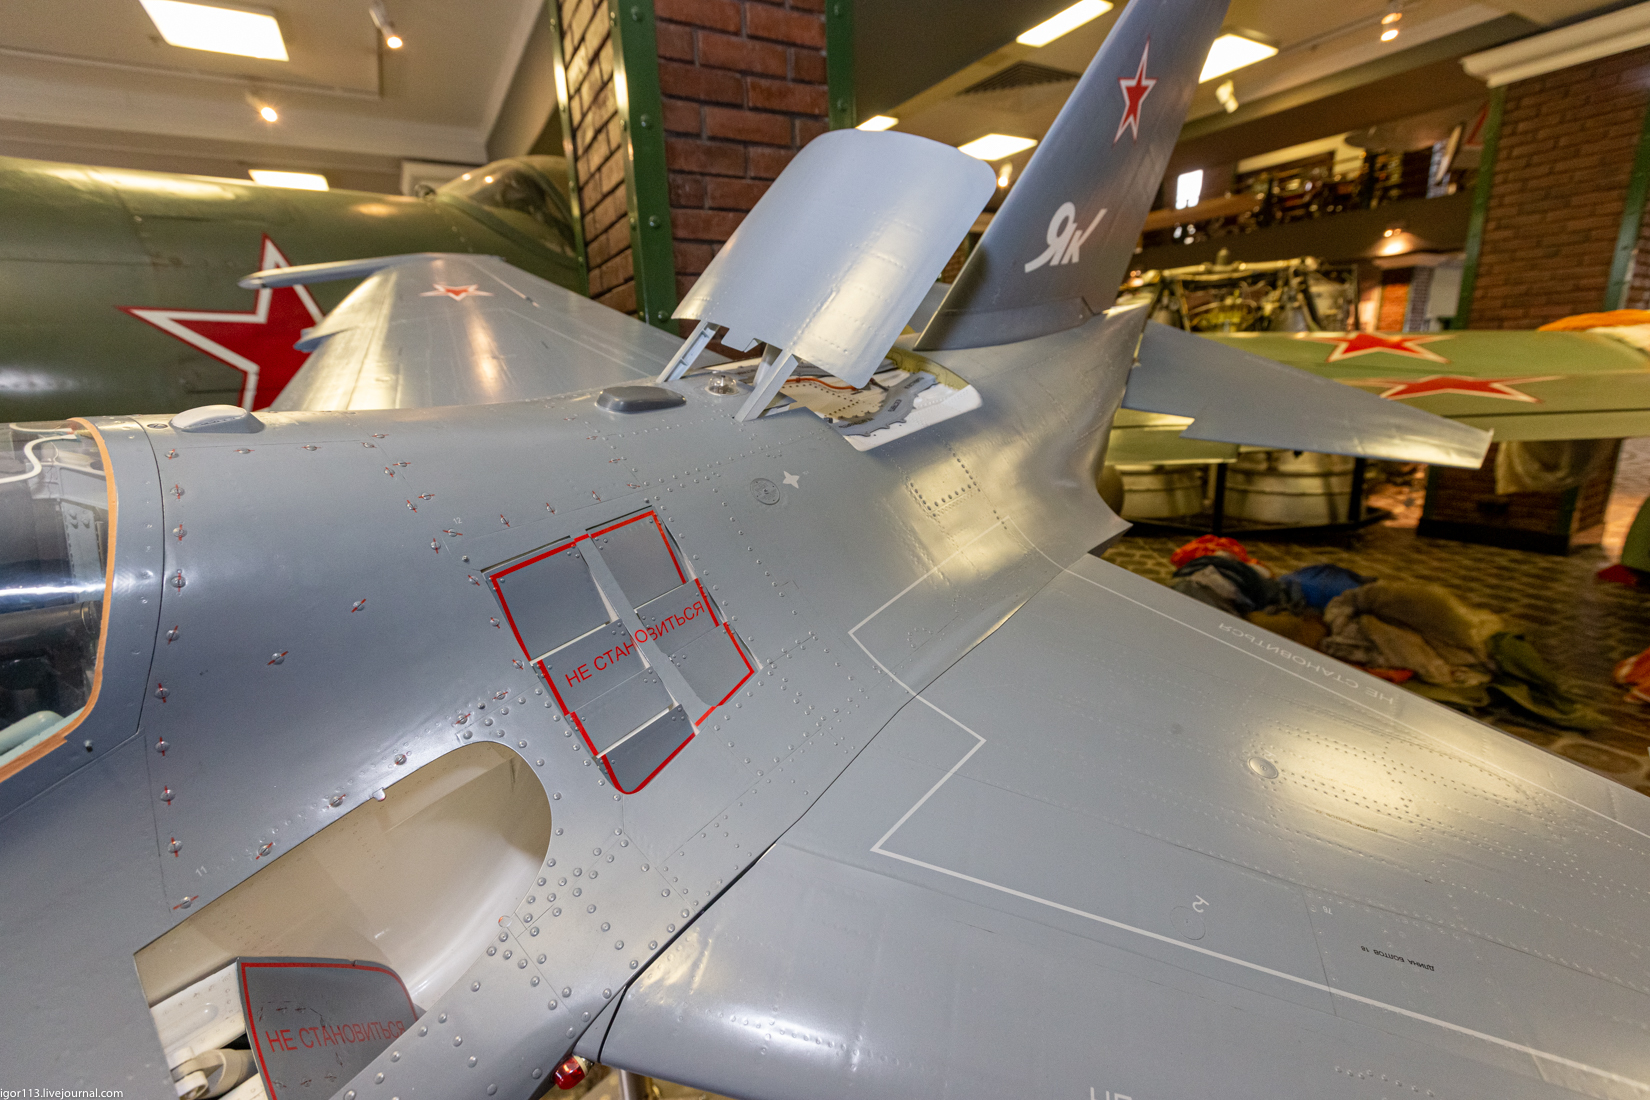 27 апреля 2021 музей техники Задорожного: модель Як-130 и прочее, прочее, 